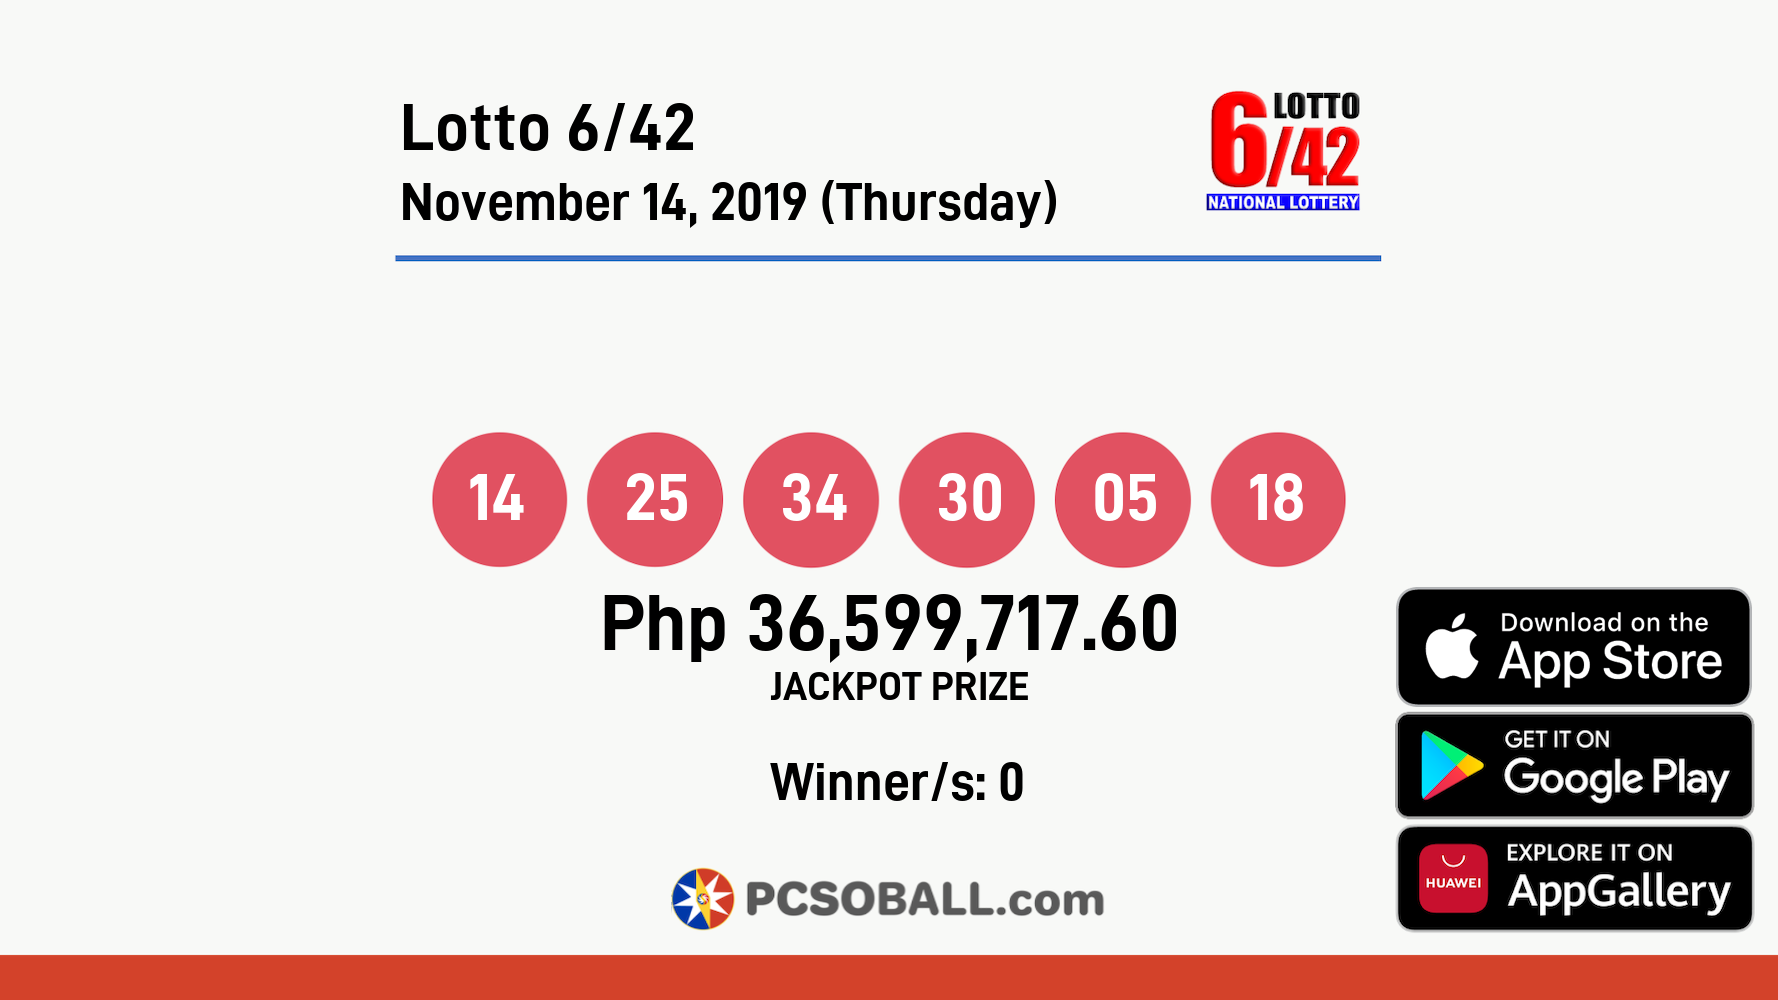 Lotto 6/42 November 14, 2019 (Thursday) Result